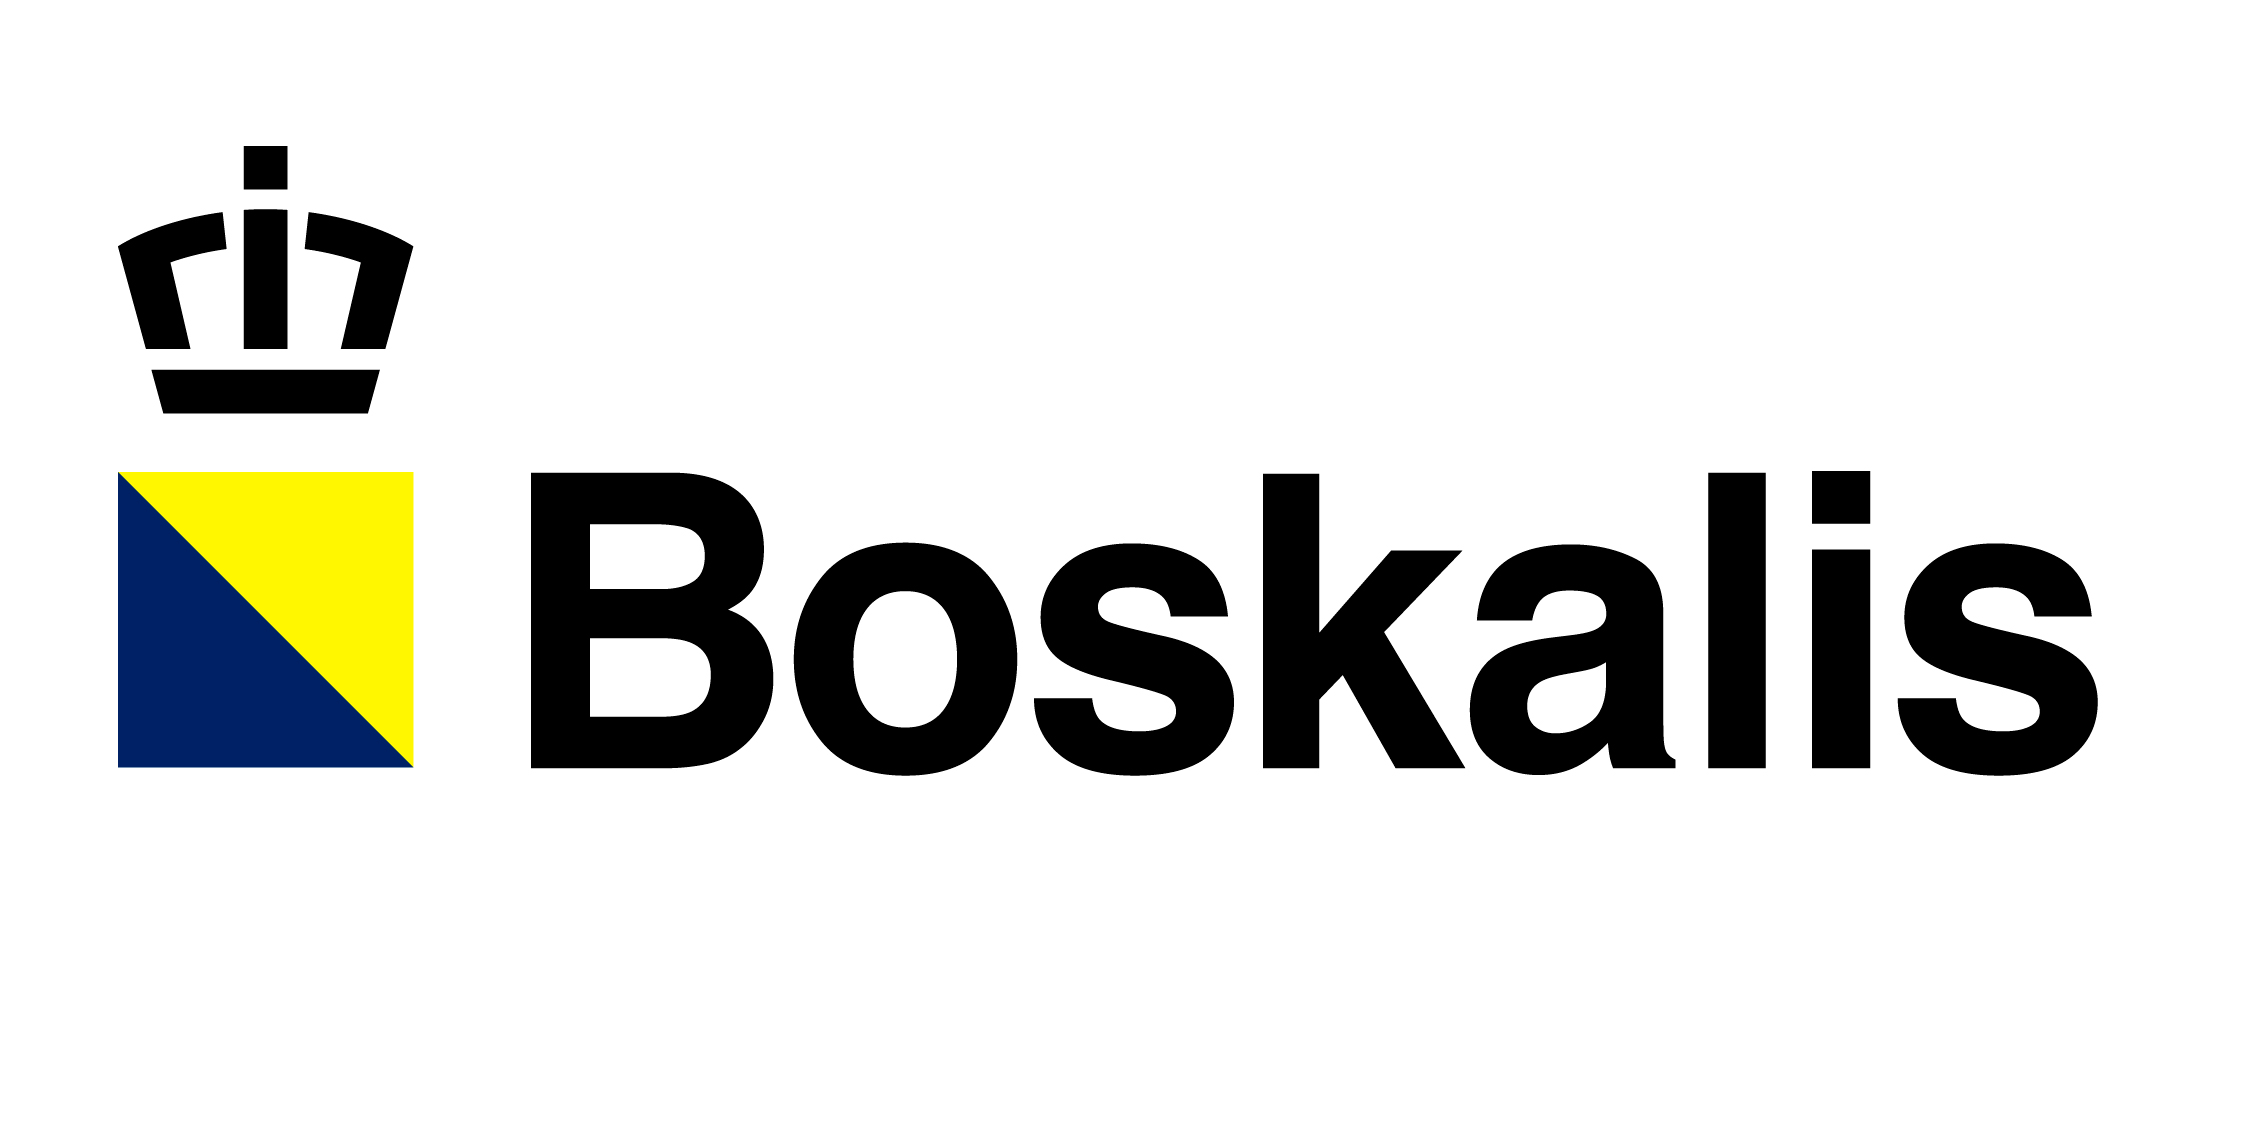 Boskalis heeft de opdracht verworven voor de verbreding van een deel van de snelweg A2